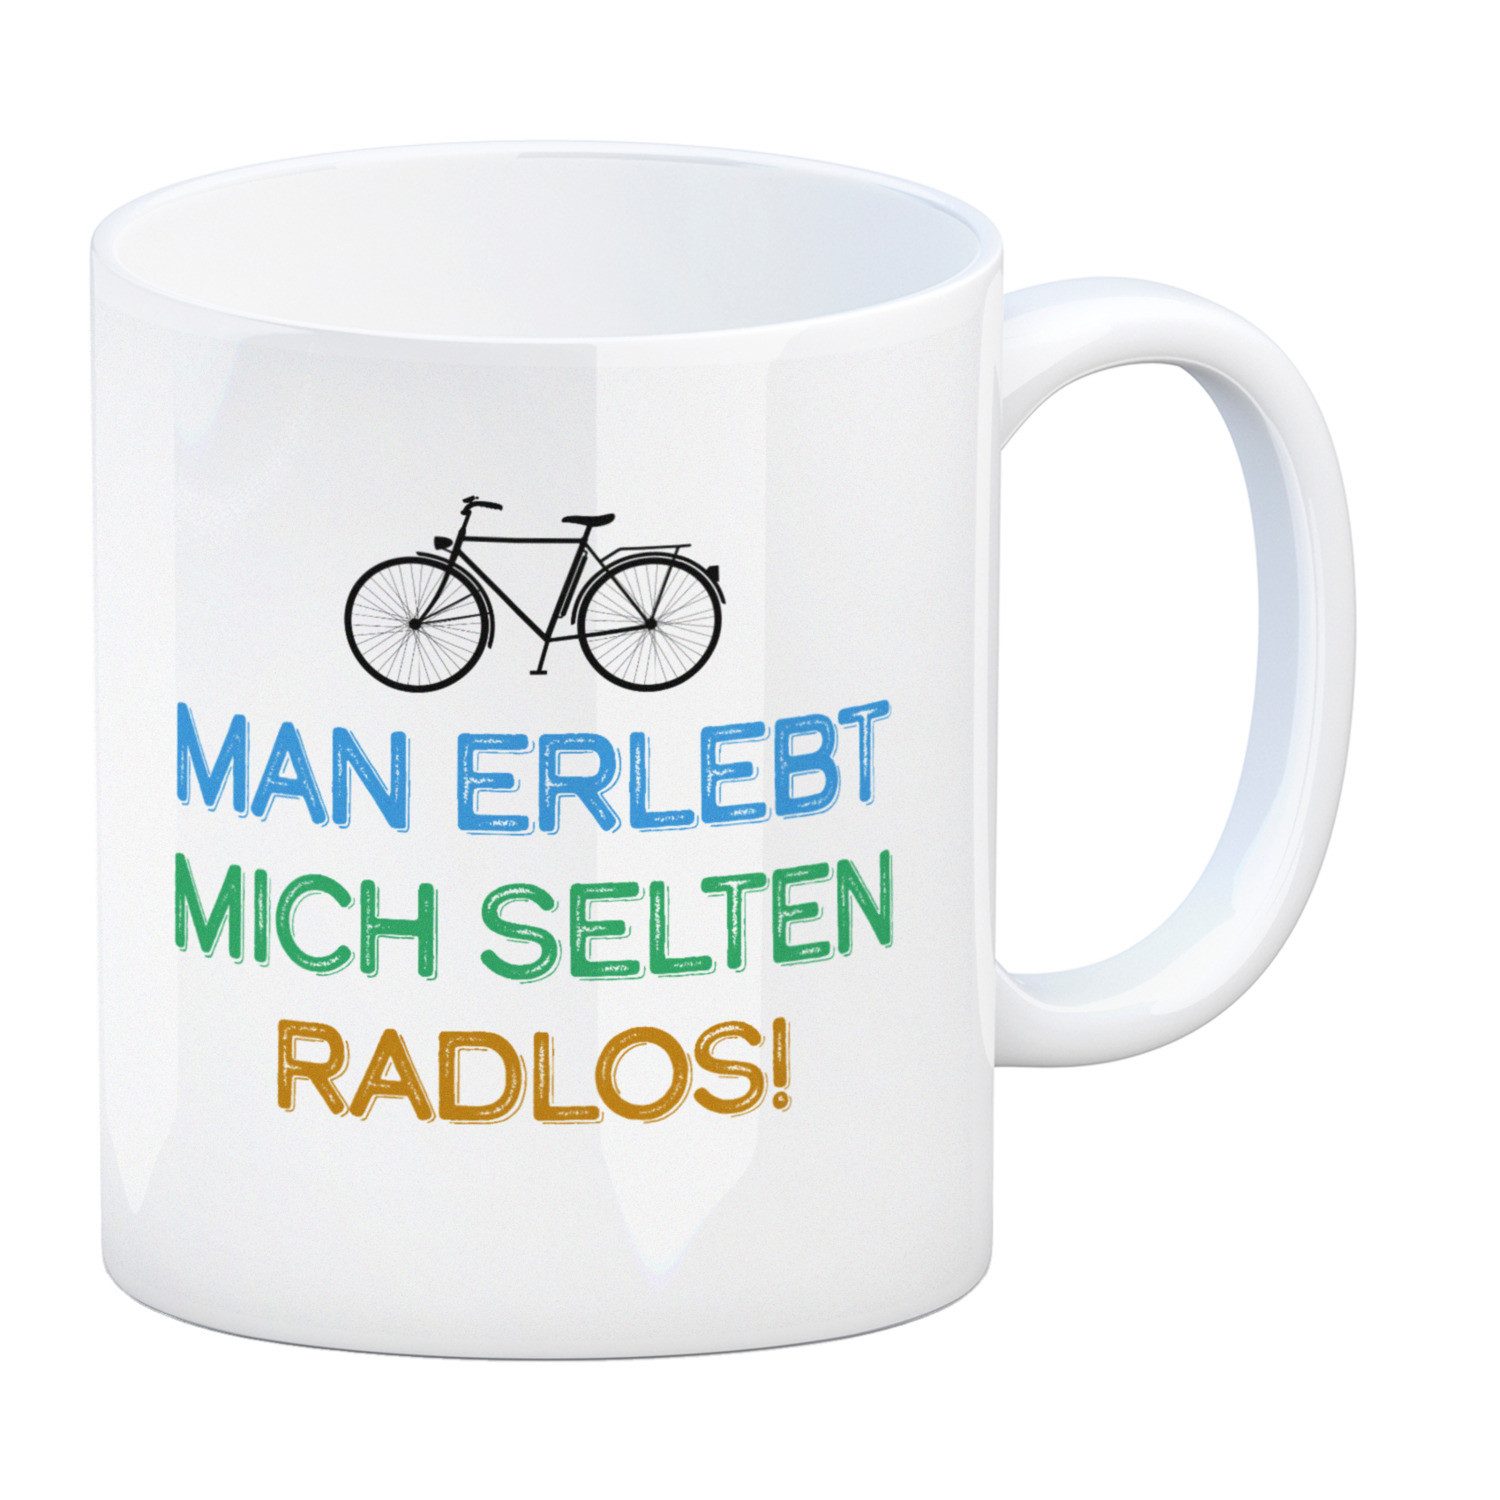 speecheese Tasse Man erlebt mich selten radlos Kaffeebecher mit Fahrrad Motiv Hobby